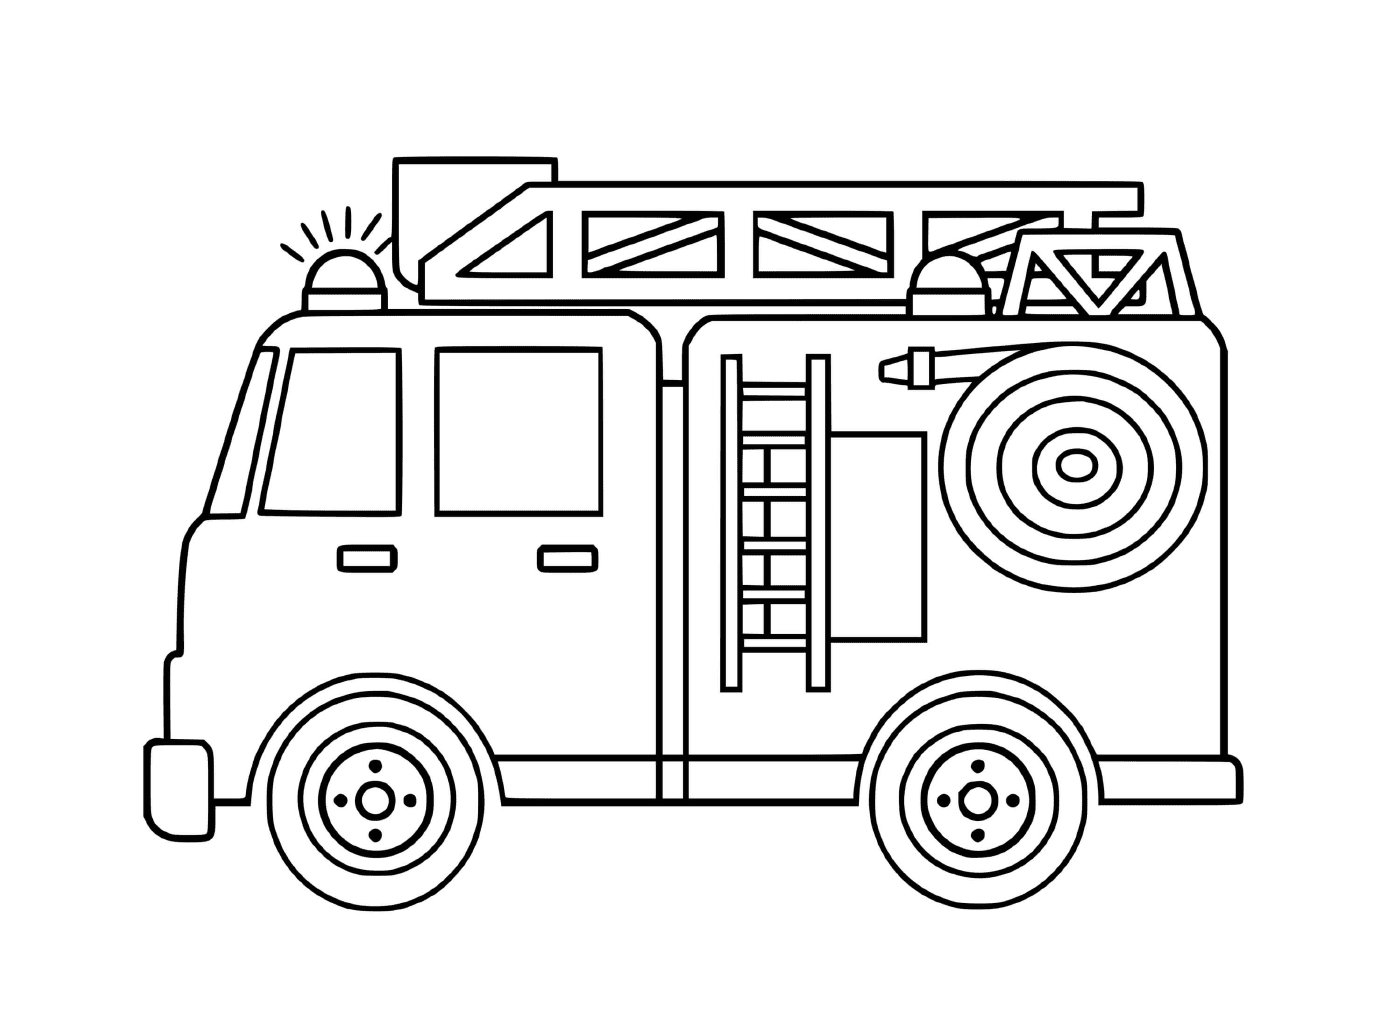  Simple y práctica camioneta de bomberos 